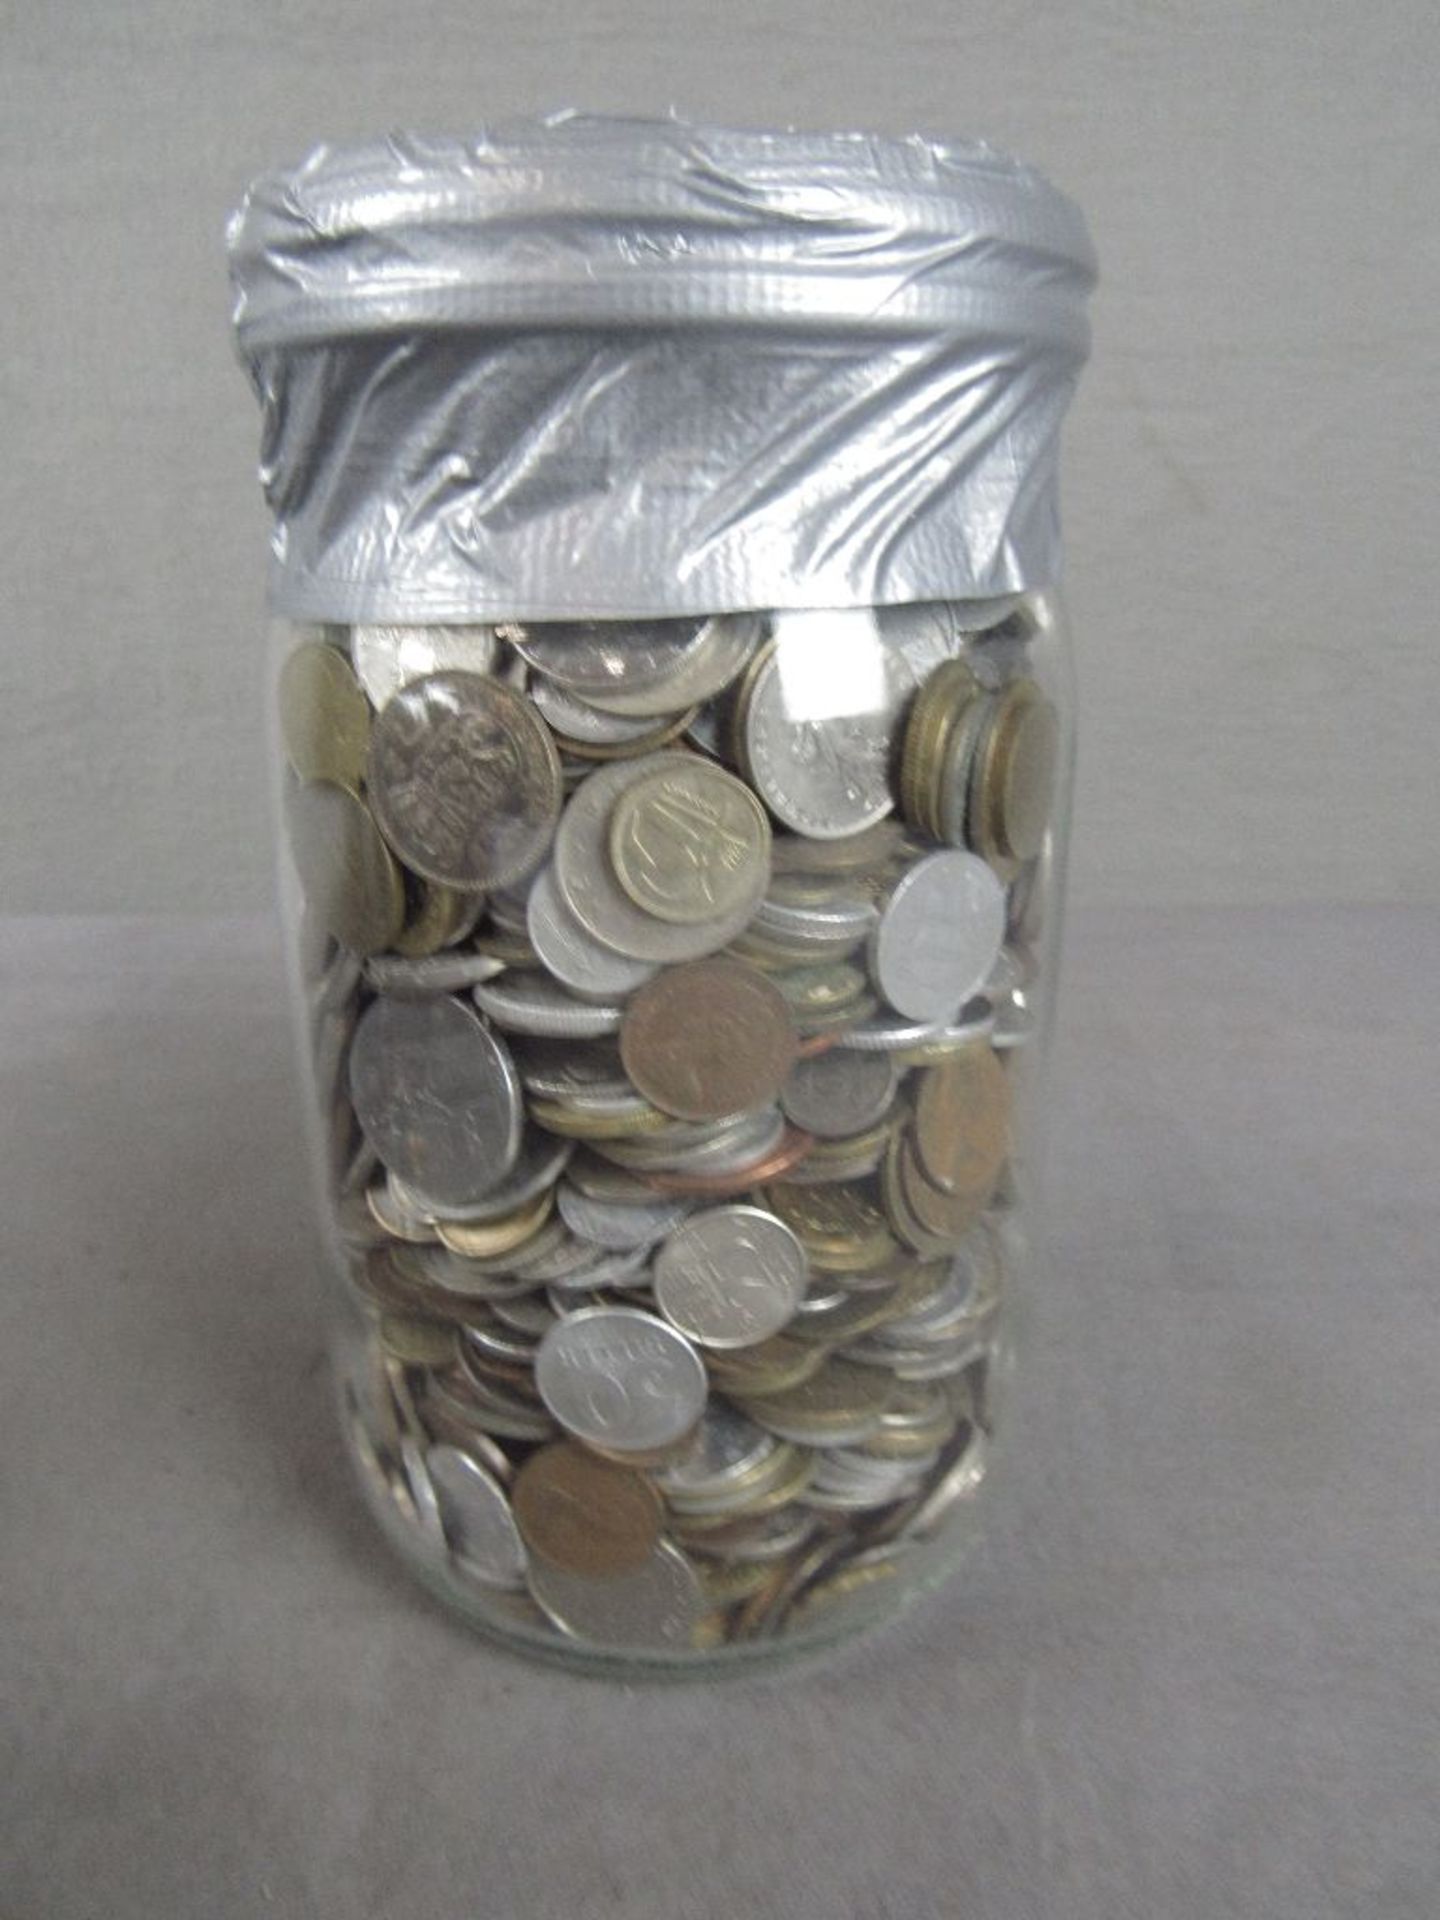 Prall gefülltes Glas mit Münzen